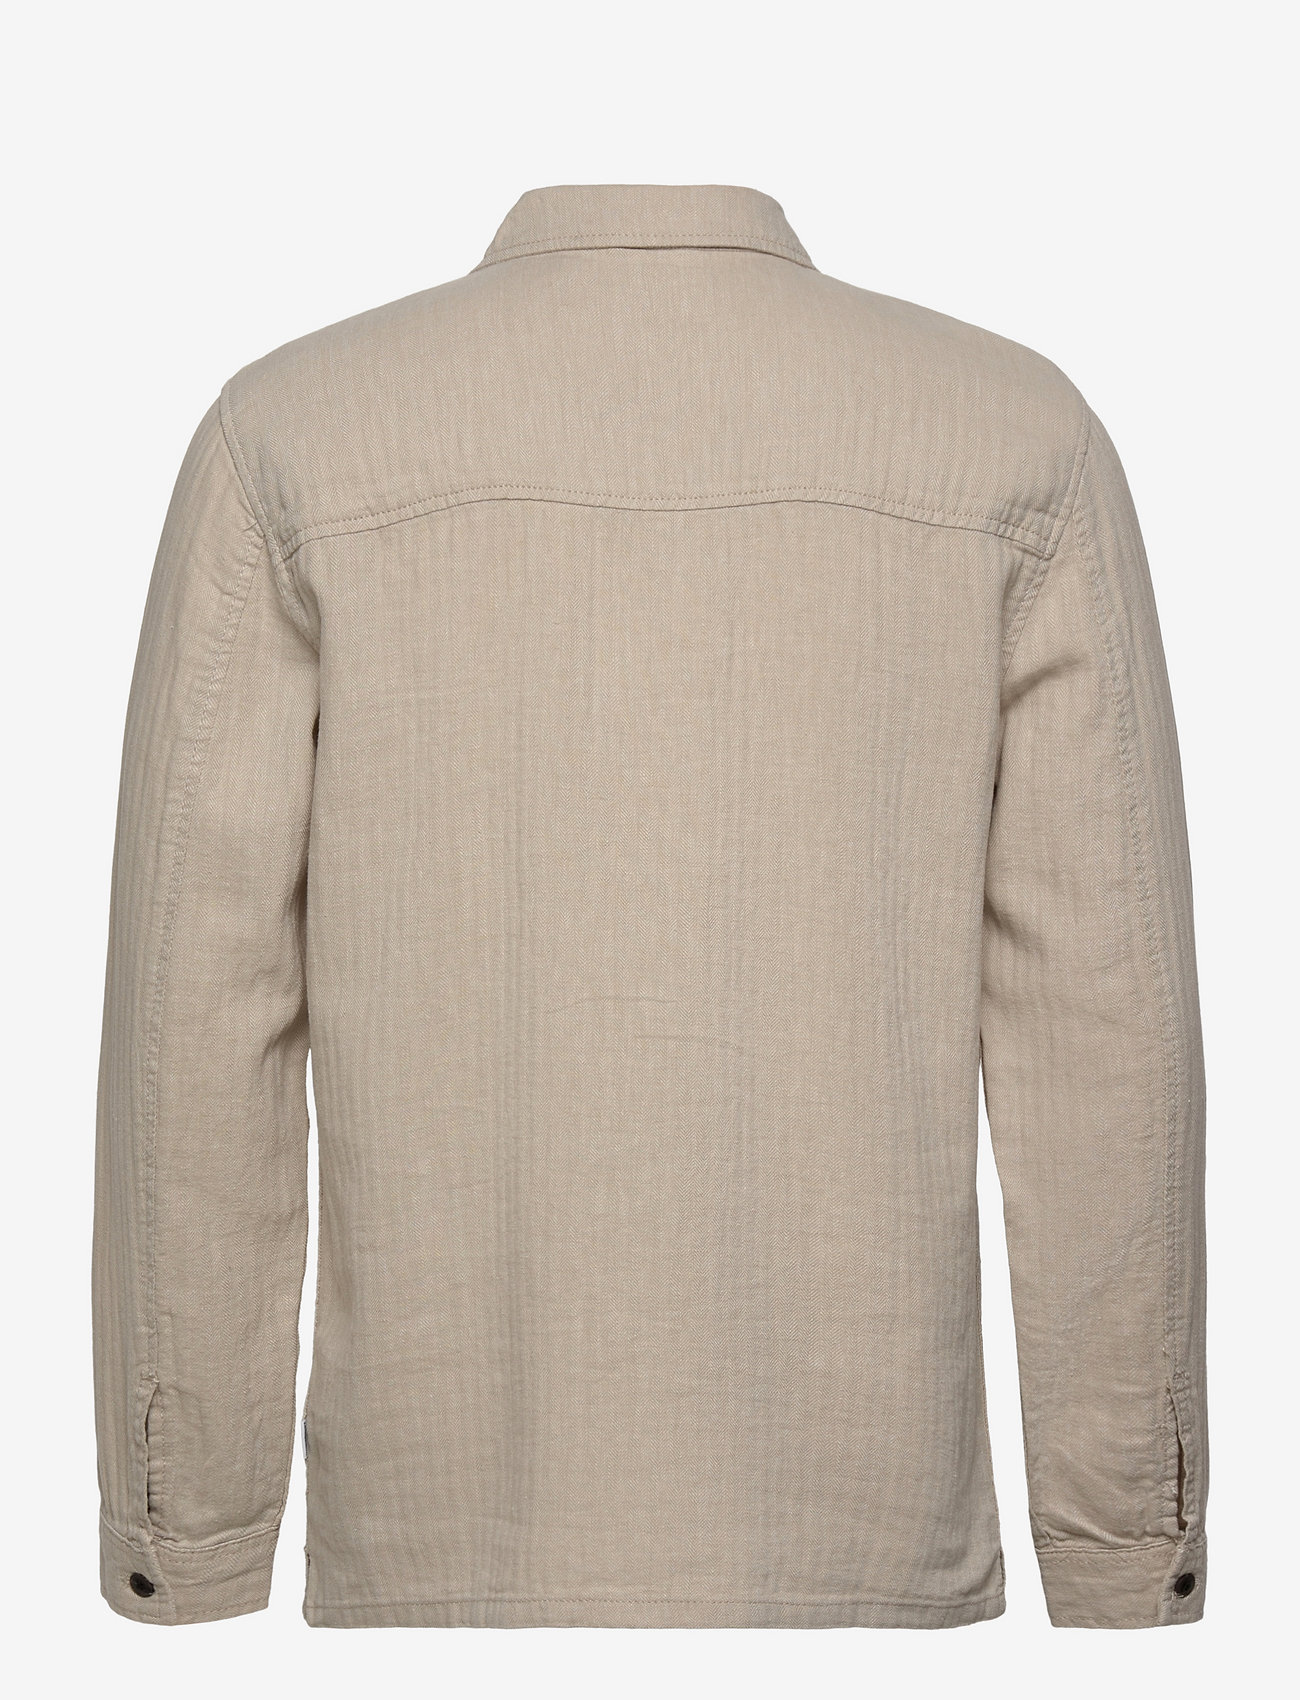 Lindbergh - Cotton linen overshirt L/S - heren - lt stone - 1